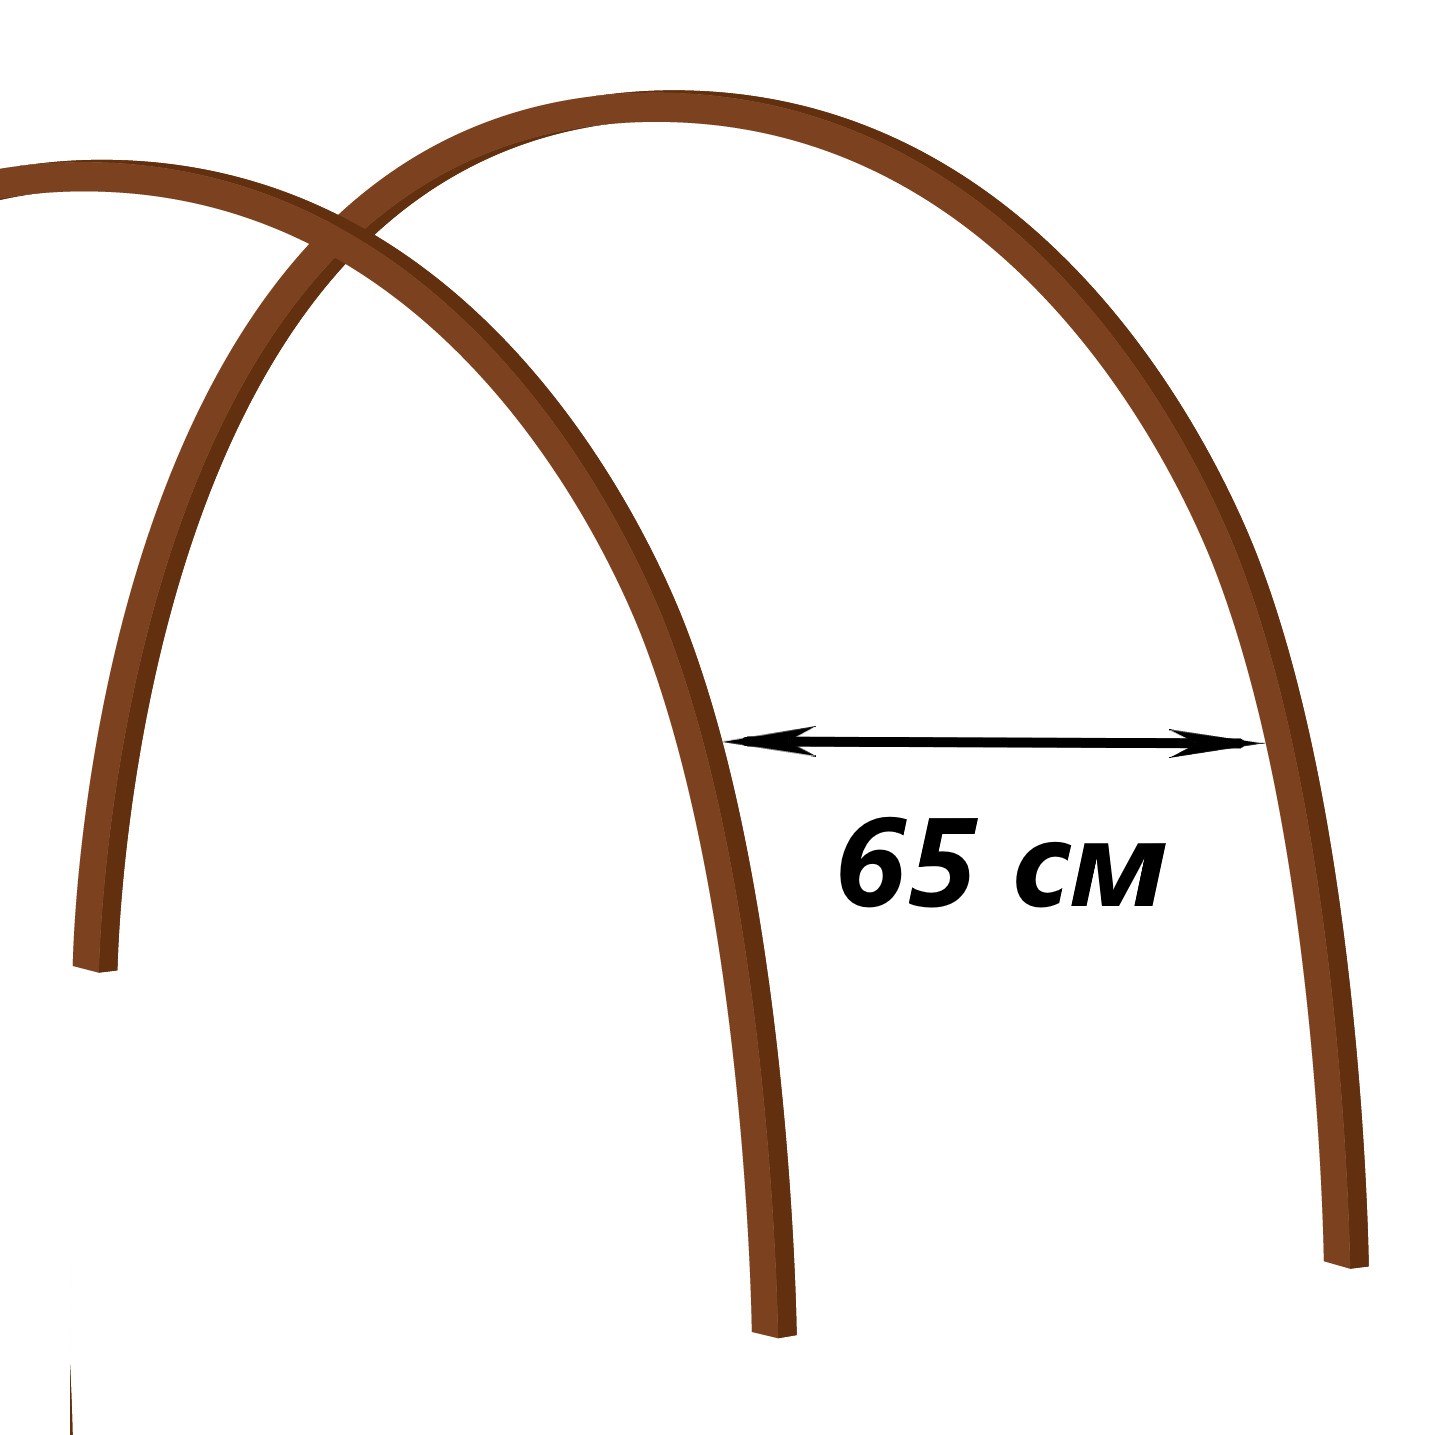 Расстояние между дугами 65 см